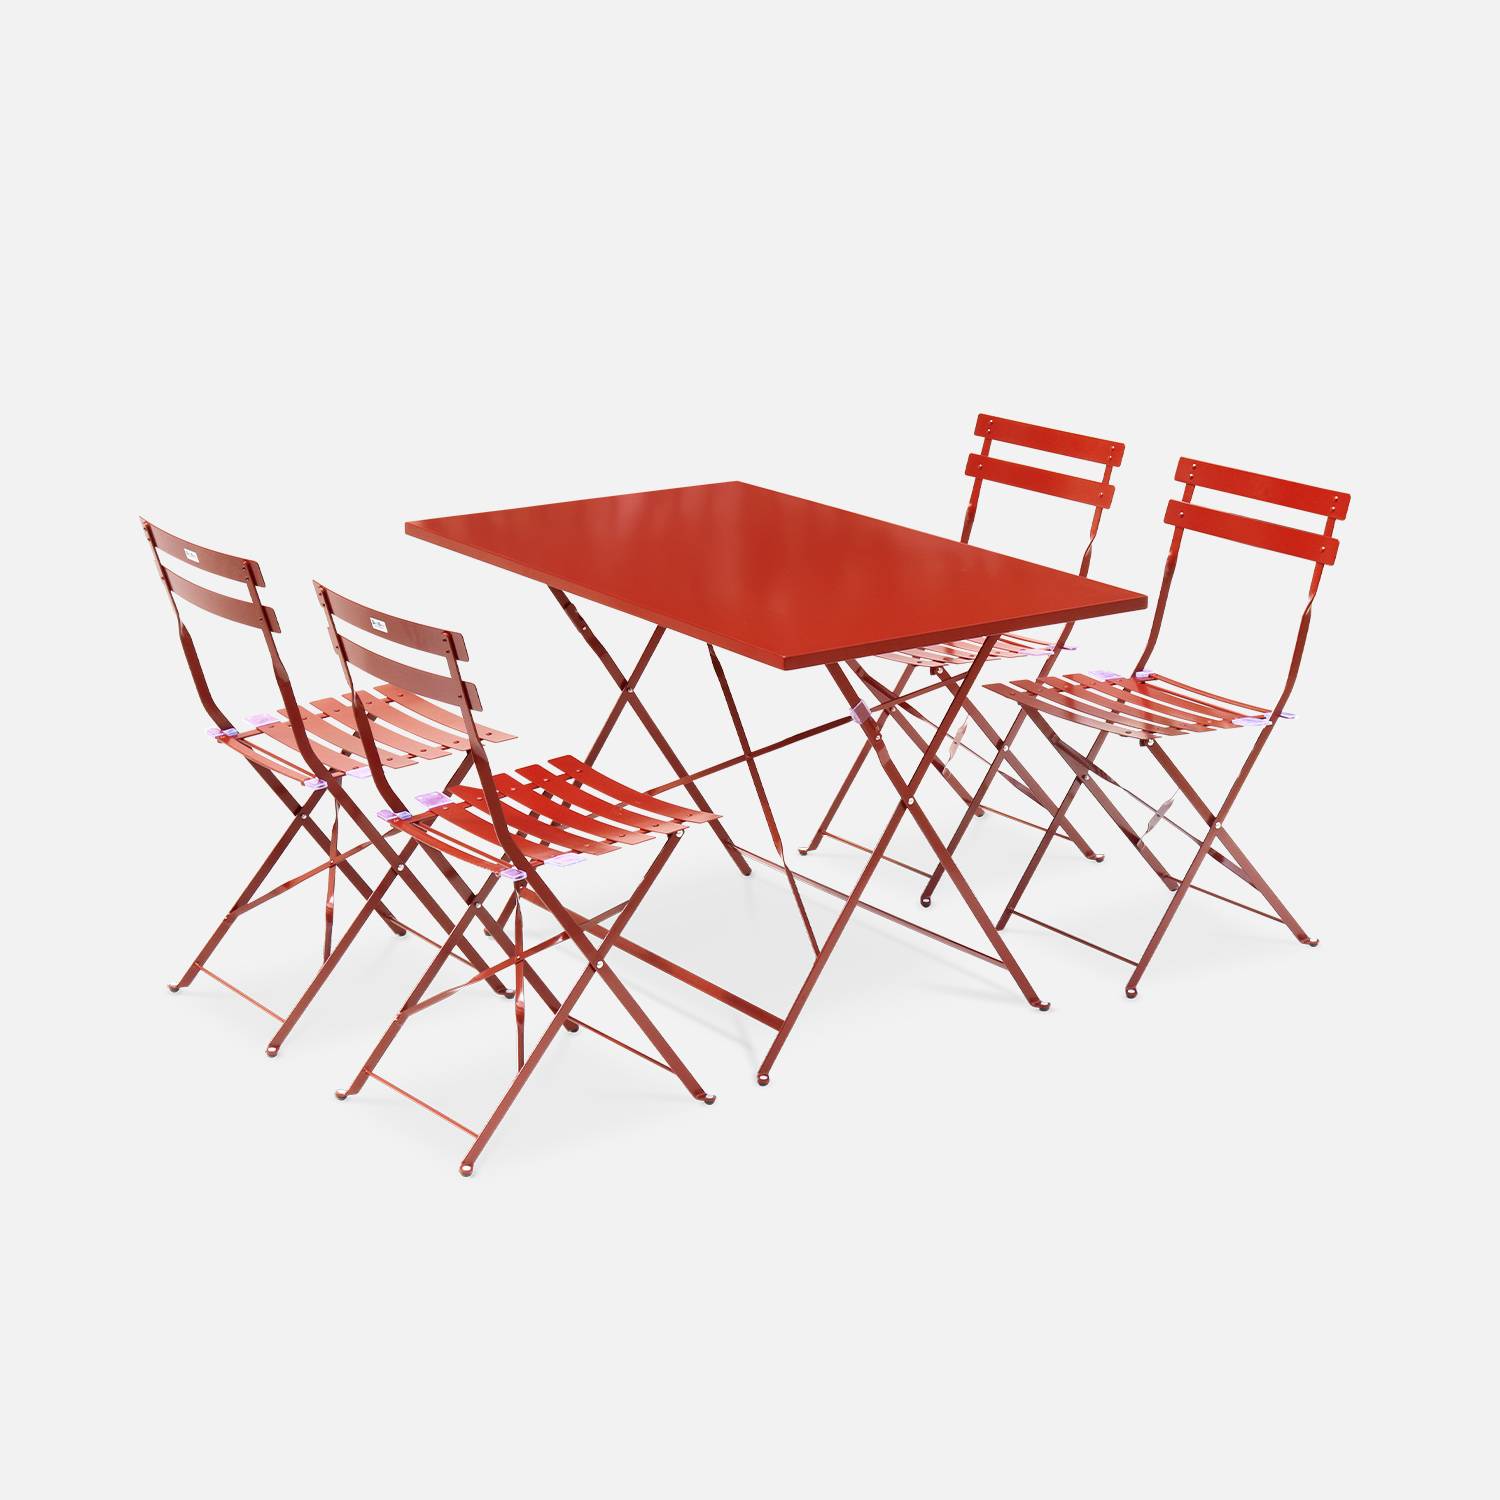 Tavolo da giardino, bar bistrot, pieghevole - modello: Emilia, rettangolare, colore: Terracotta- Tavolo, dimensioni: 110x70cm, con quattro sedie pieghevoli, acciaio termolaccato Photo2